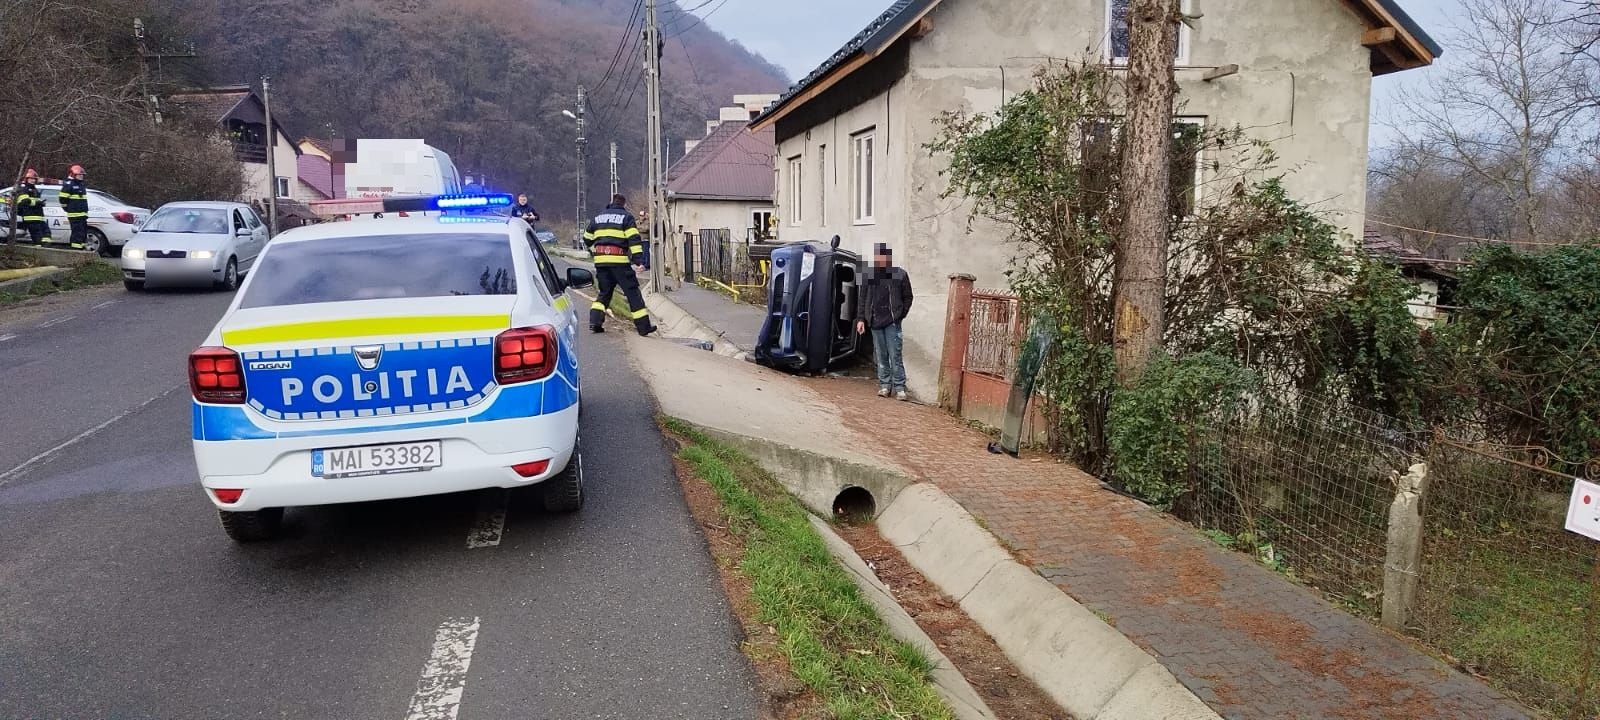 Două persoane, transportate la spital cu ambulanța după ce s-au răsturnat cu mașina în Dej /FOTO: IPJ Cluj